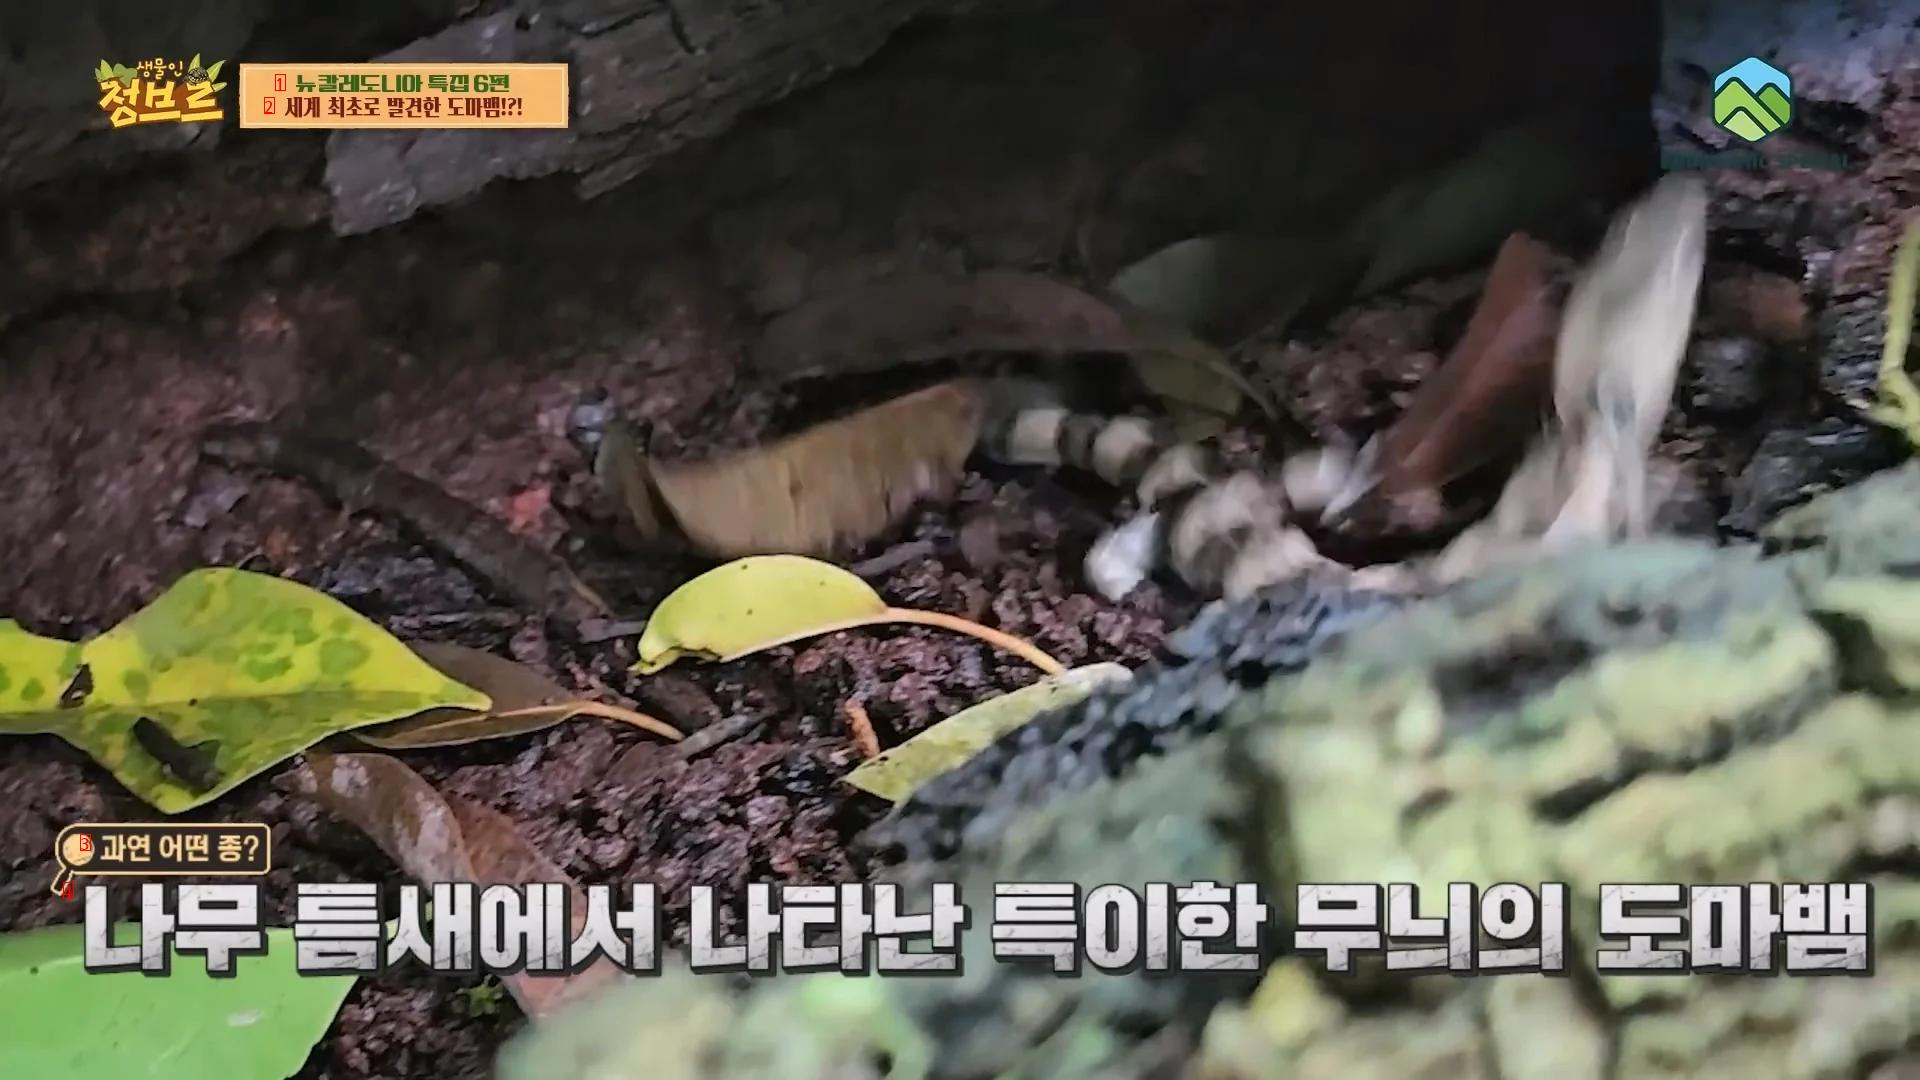 한국유튜버가 세계 최초로 촬영한걸로 예상되는 도마뱀